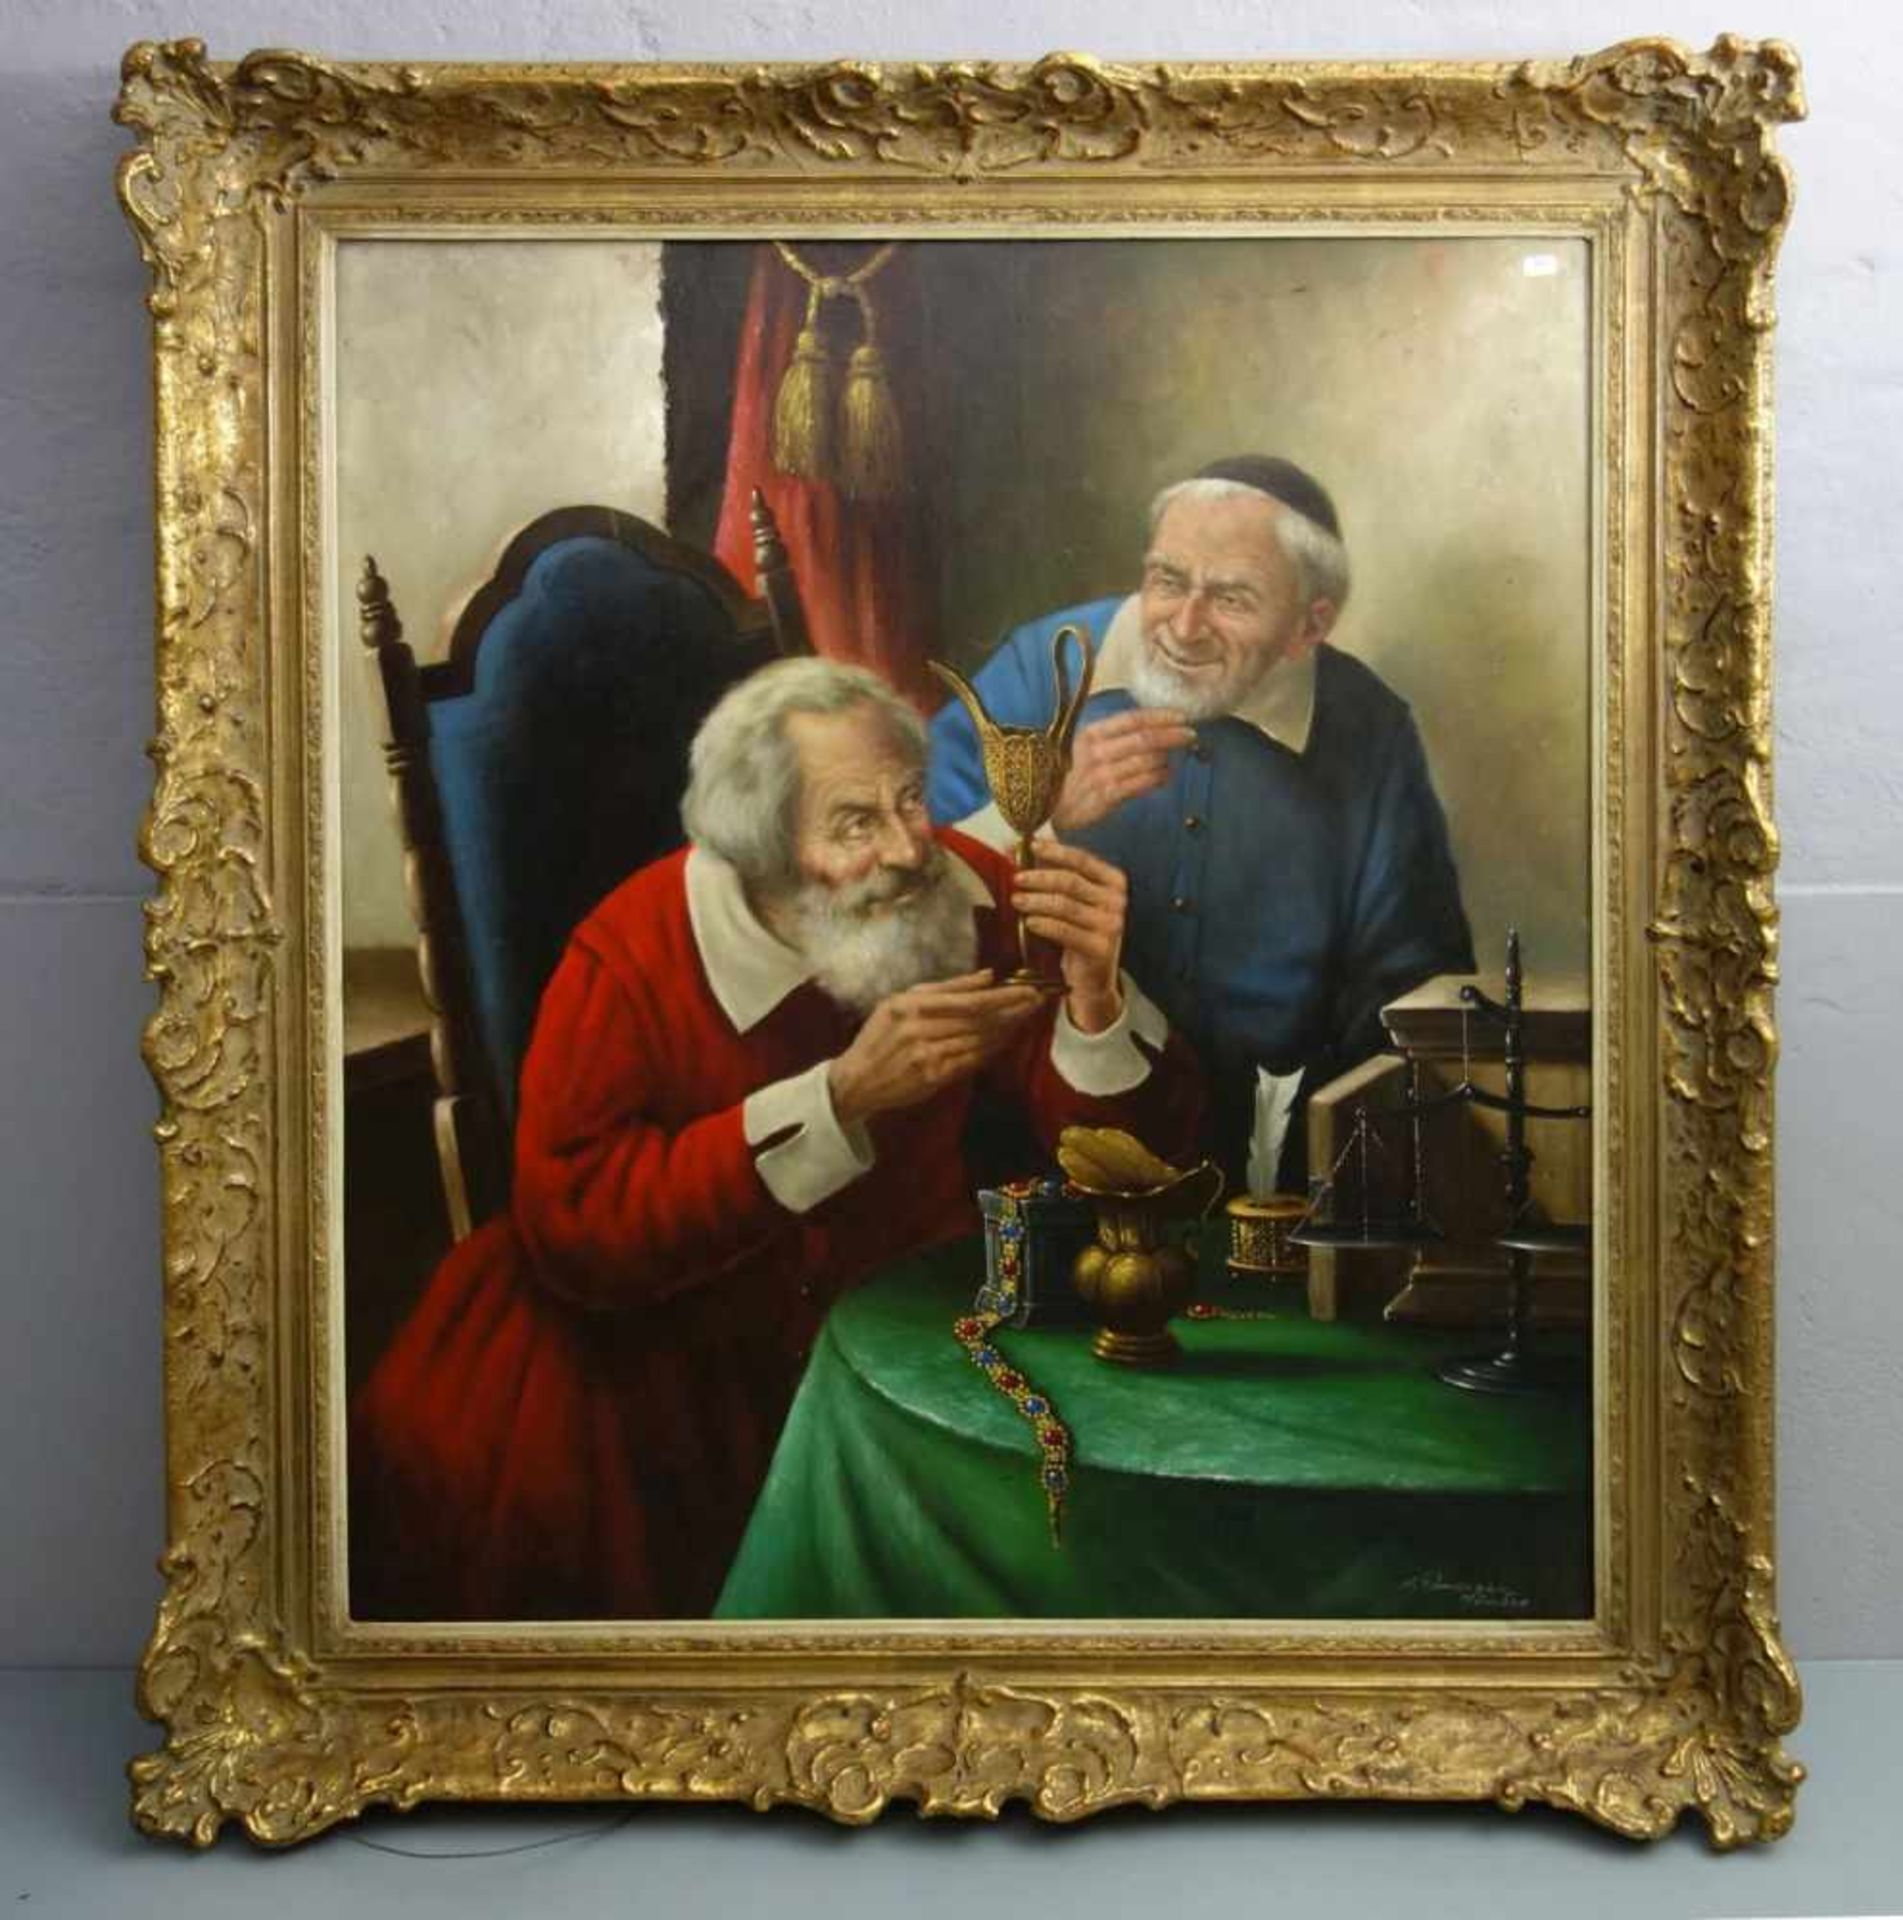 PURSCHKE, WALTHER (geb. 1924 in München), Gemälde / painting: "Beim Antiquitätenhändler", Öl auf